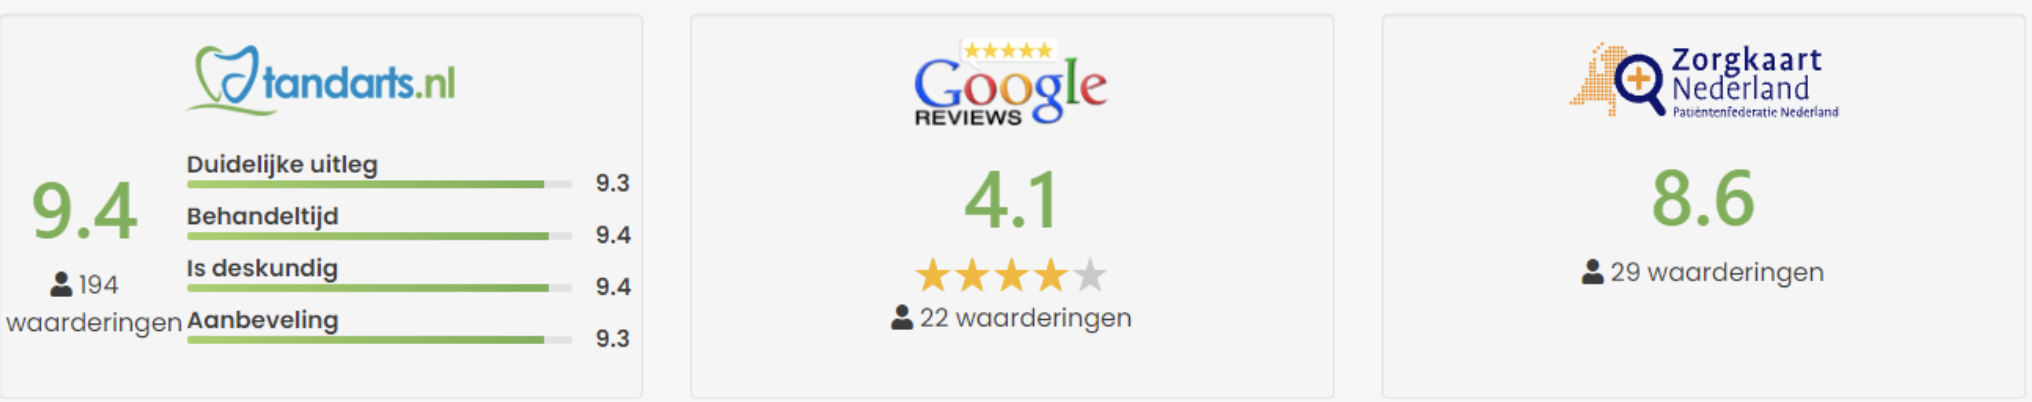 Alle review van Google en Zorgkaart Nederland